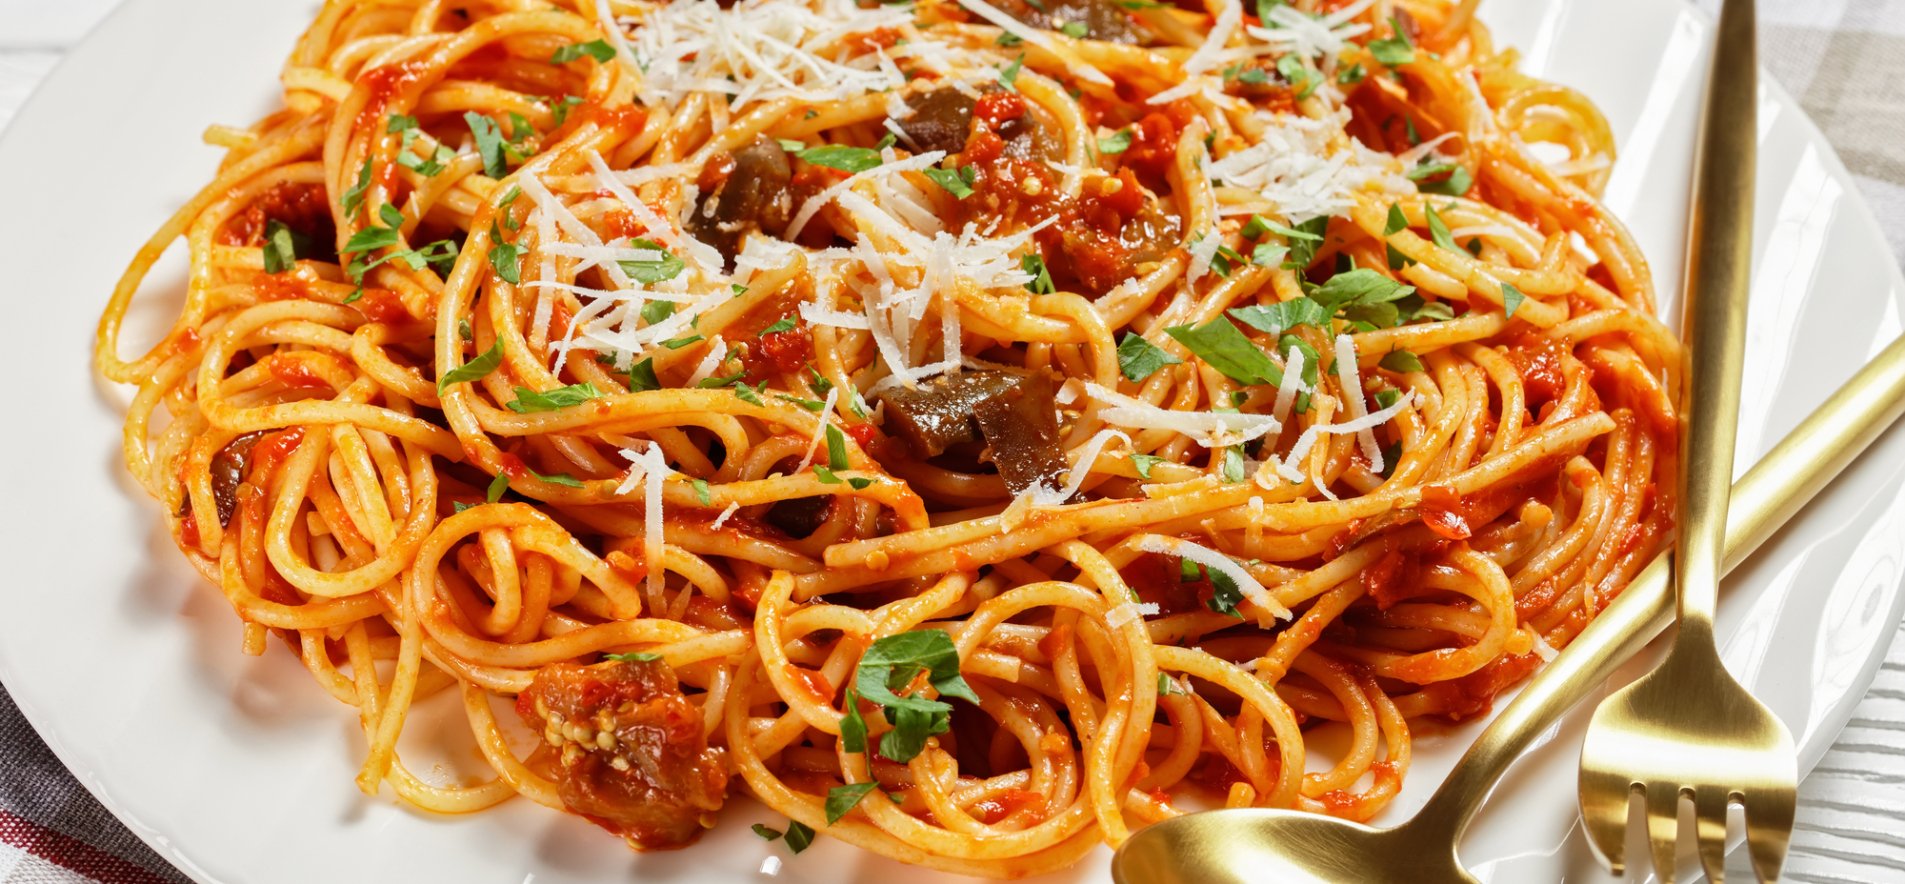 Как приготовить Паста с баклажанами и помидорами по итальянски просто рецепт пошаговый